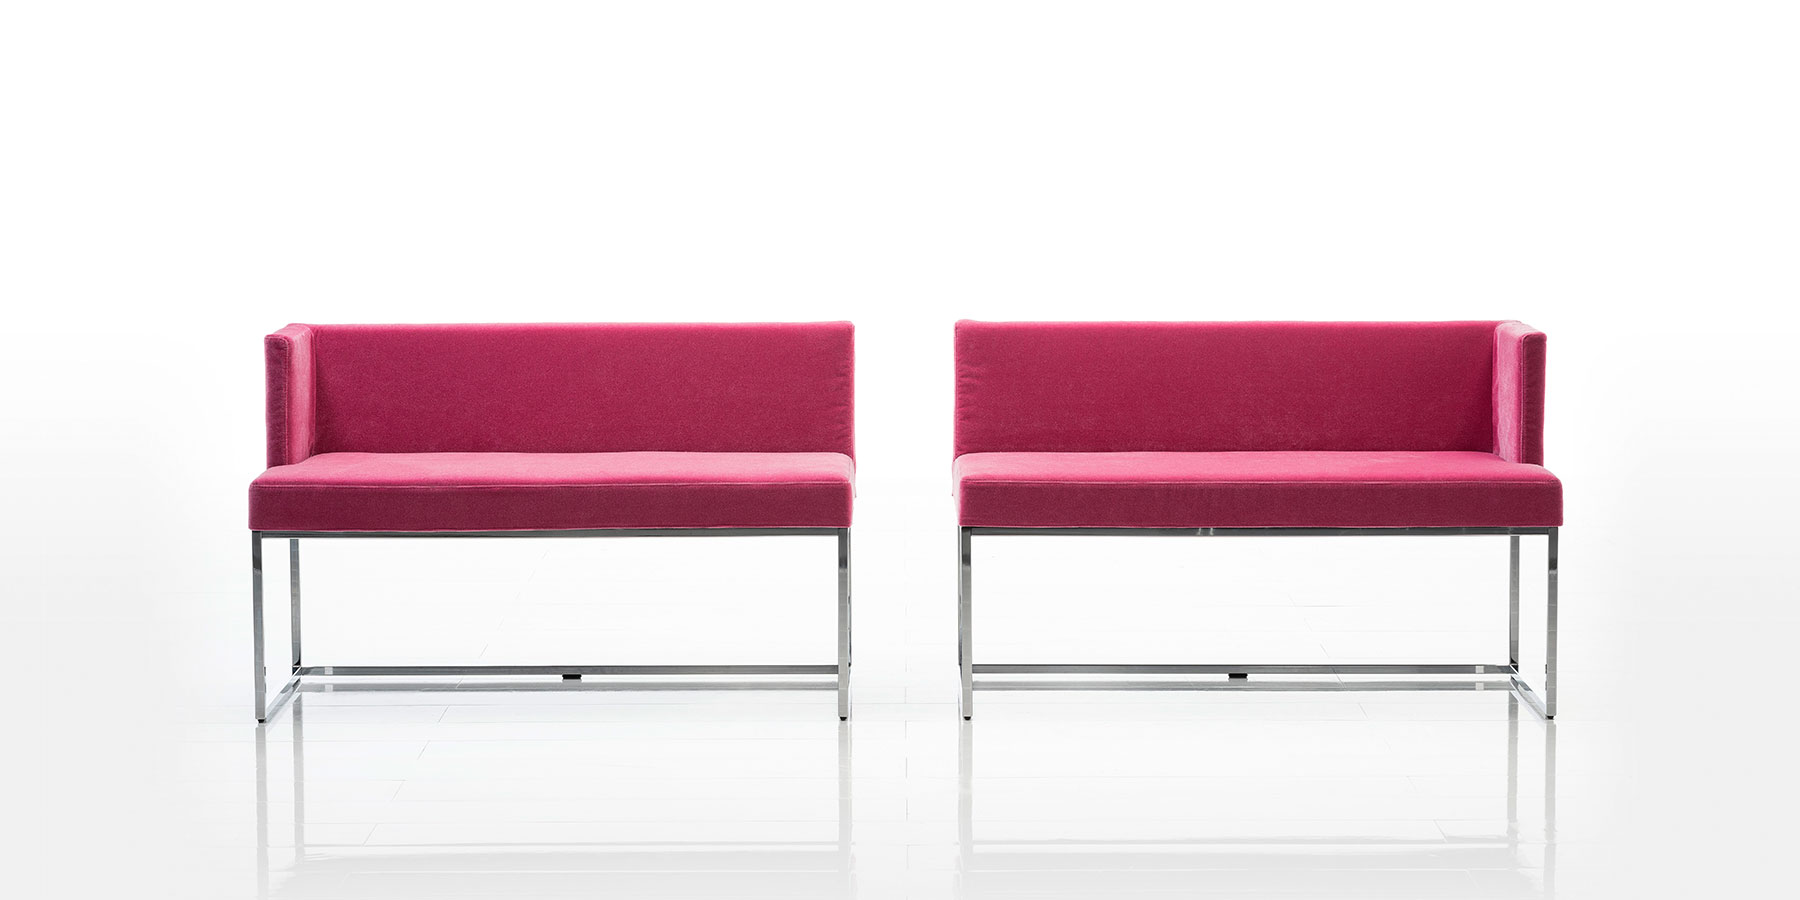 Zwei Sitzbänke mit niedriger Rückenlehne und in pinkem Stoff stehen mit geringem Abstand nebeneinander. Jede Sitzbank hat nur ein Seitenteil. Die einander gegenüberliegenden Seiten sind offen. Das Gestell ist aus Chrom glänzendem Edelstahl.